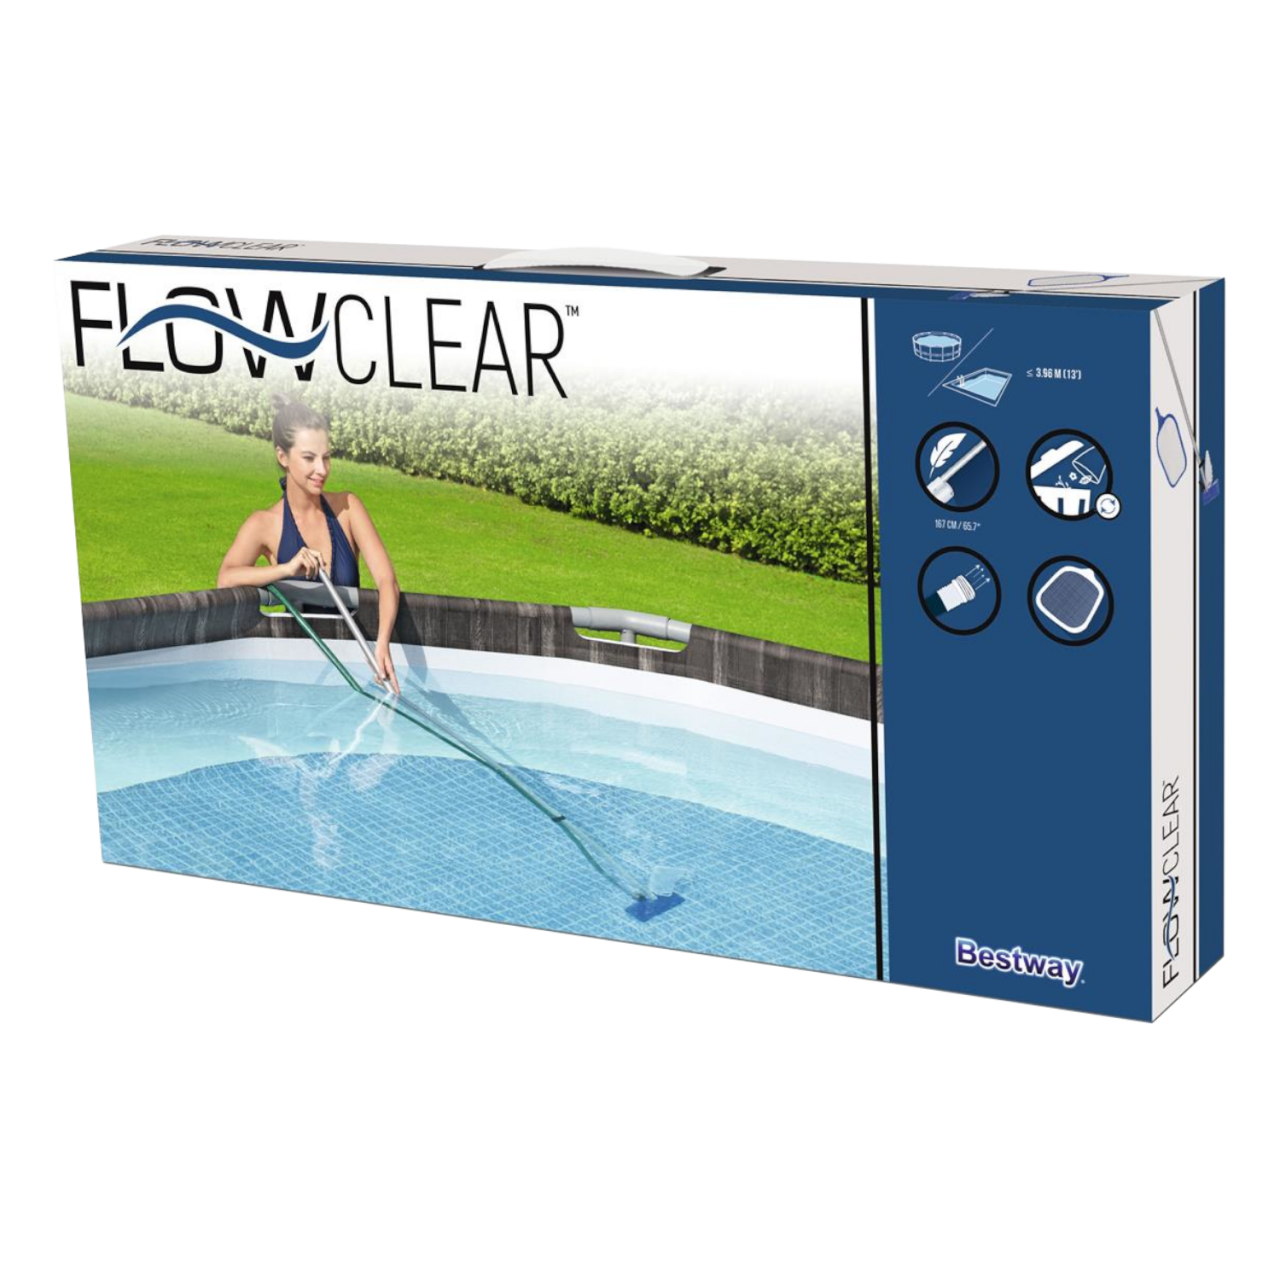 Bestway Flowclear Reinigungsset Bodenreiniger Kescher Sauger Poolpflege 58013